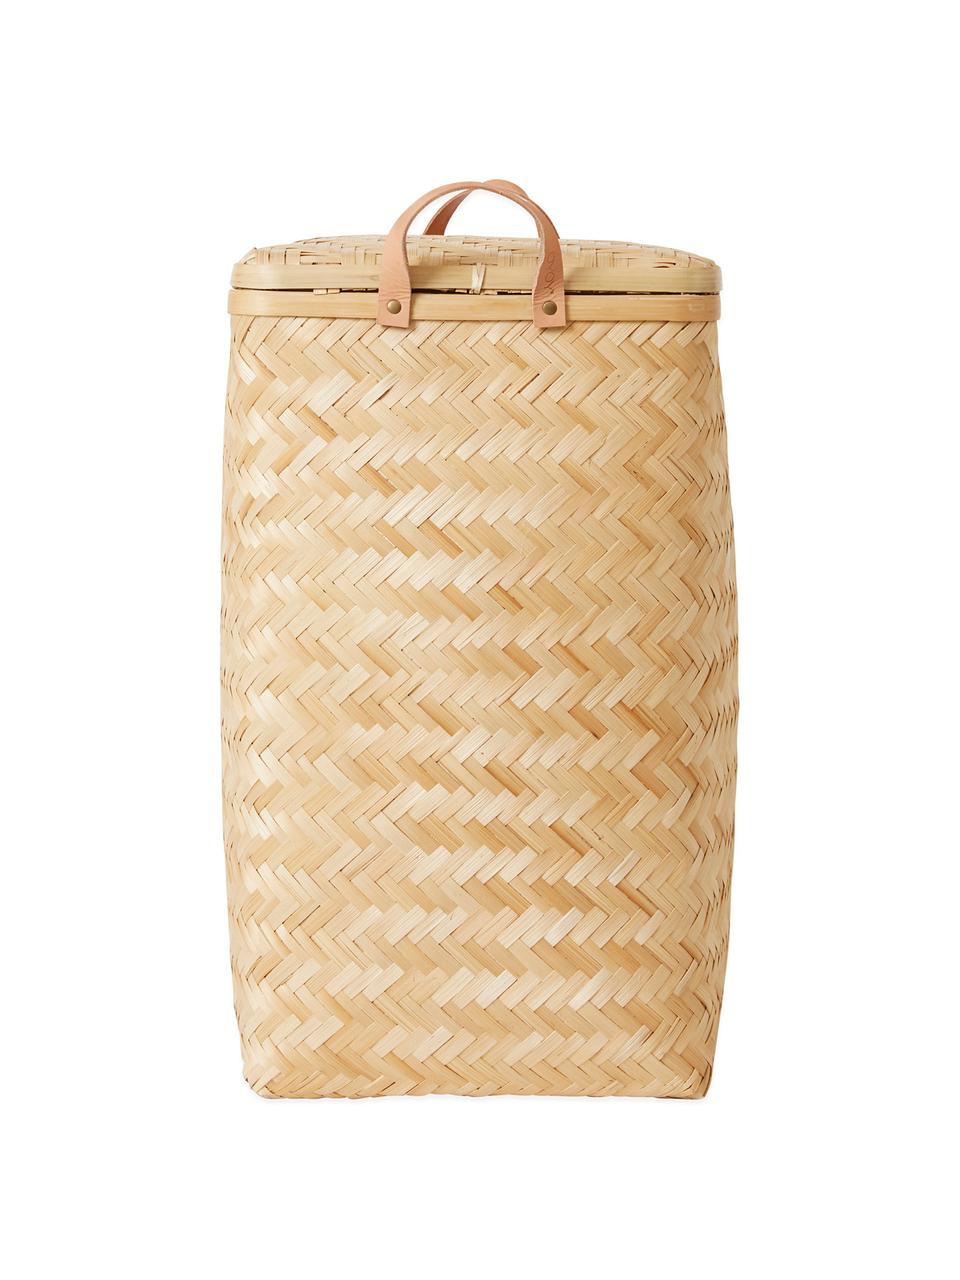 Bambus-Wäschekorb Sporta, Außen: Bambus, Innen: Baumwolle, Griffe: Leder, Bambus, B 34 x H 56 cm